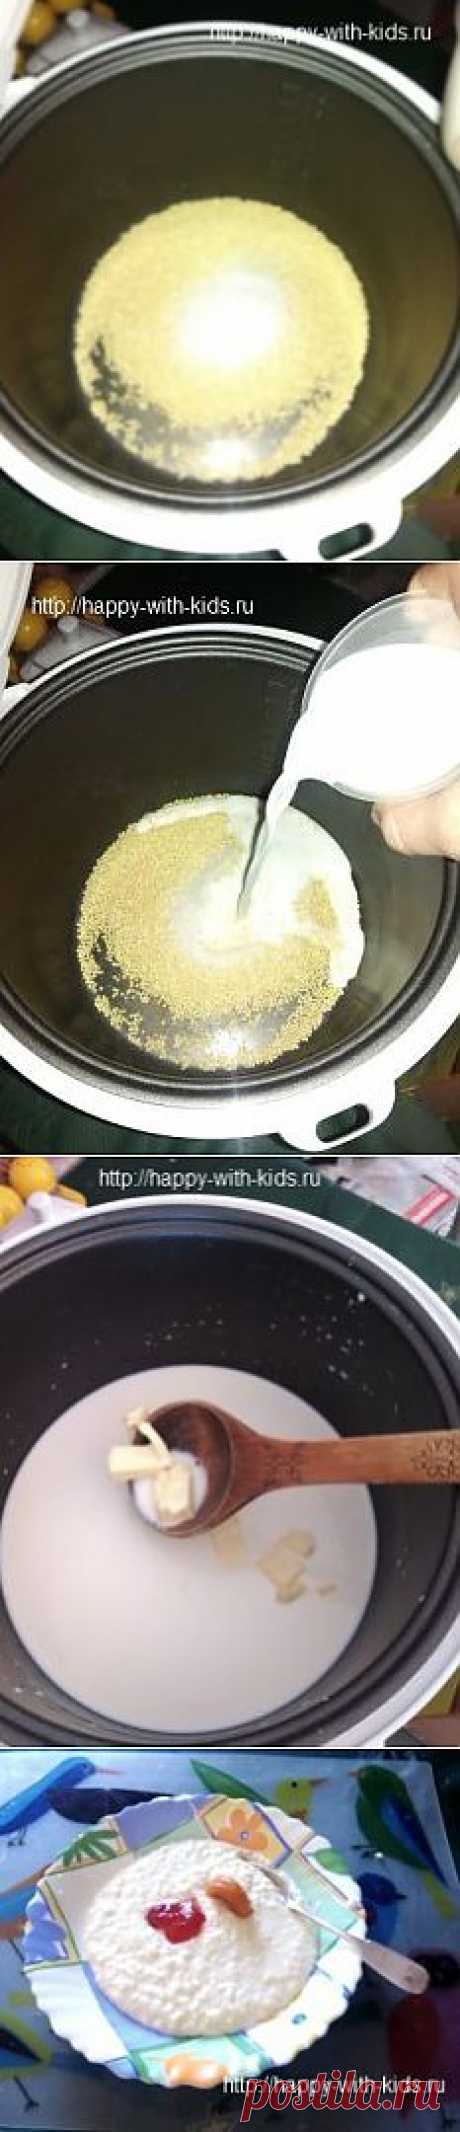 рецепты для мультиварок, готовим пшенную кашу, как приготовить пшенную кашу в мультиварке, пропорции | Счастливы с детьми